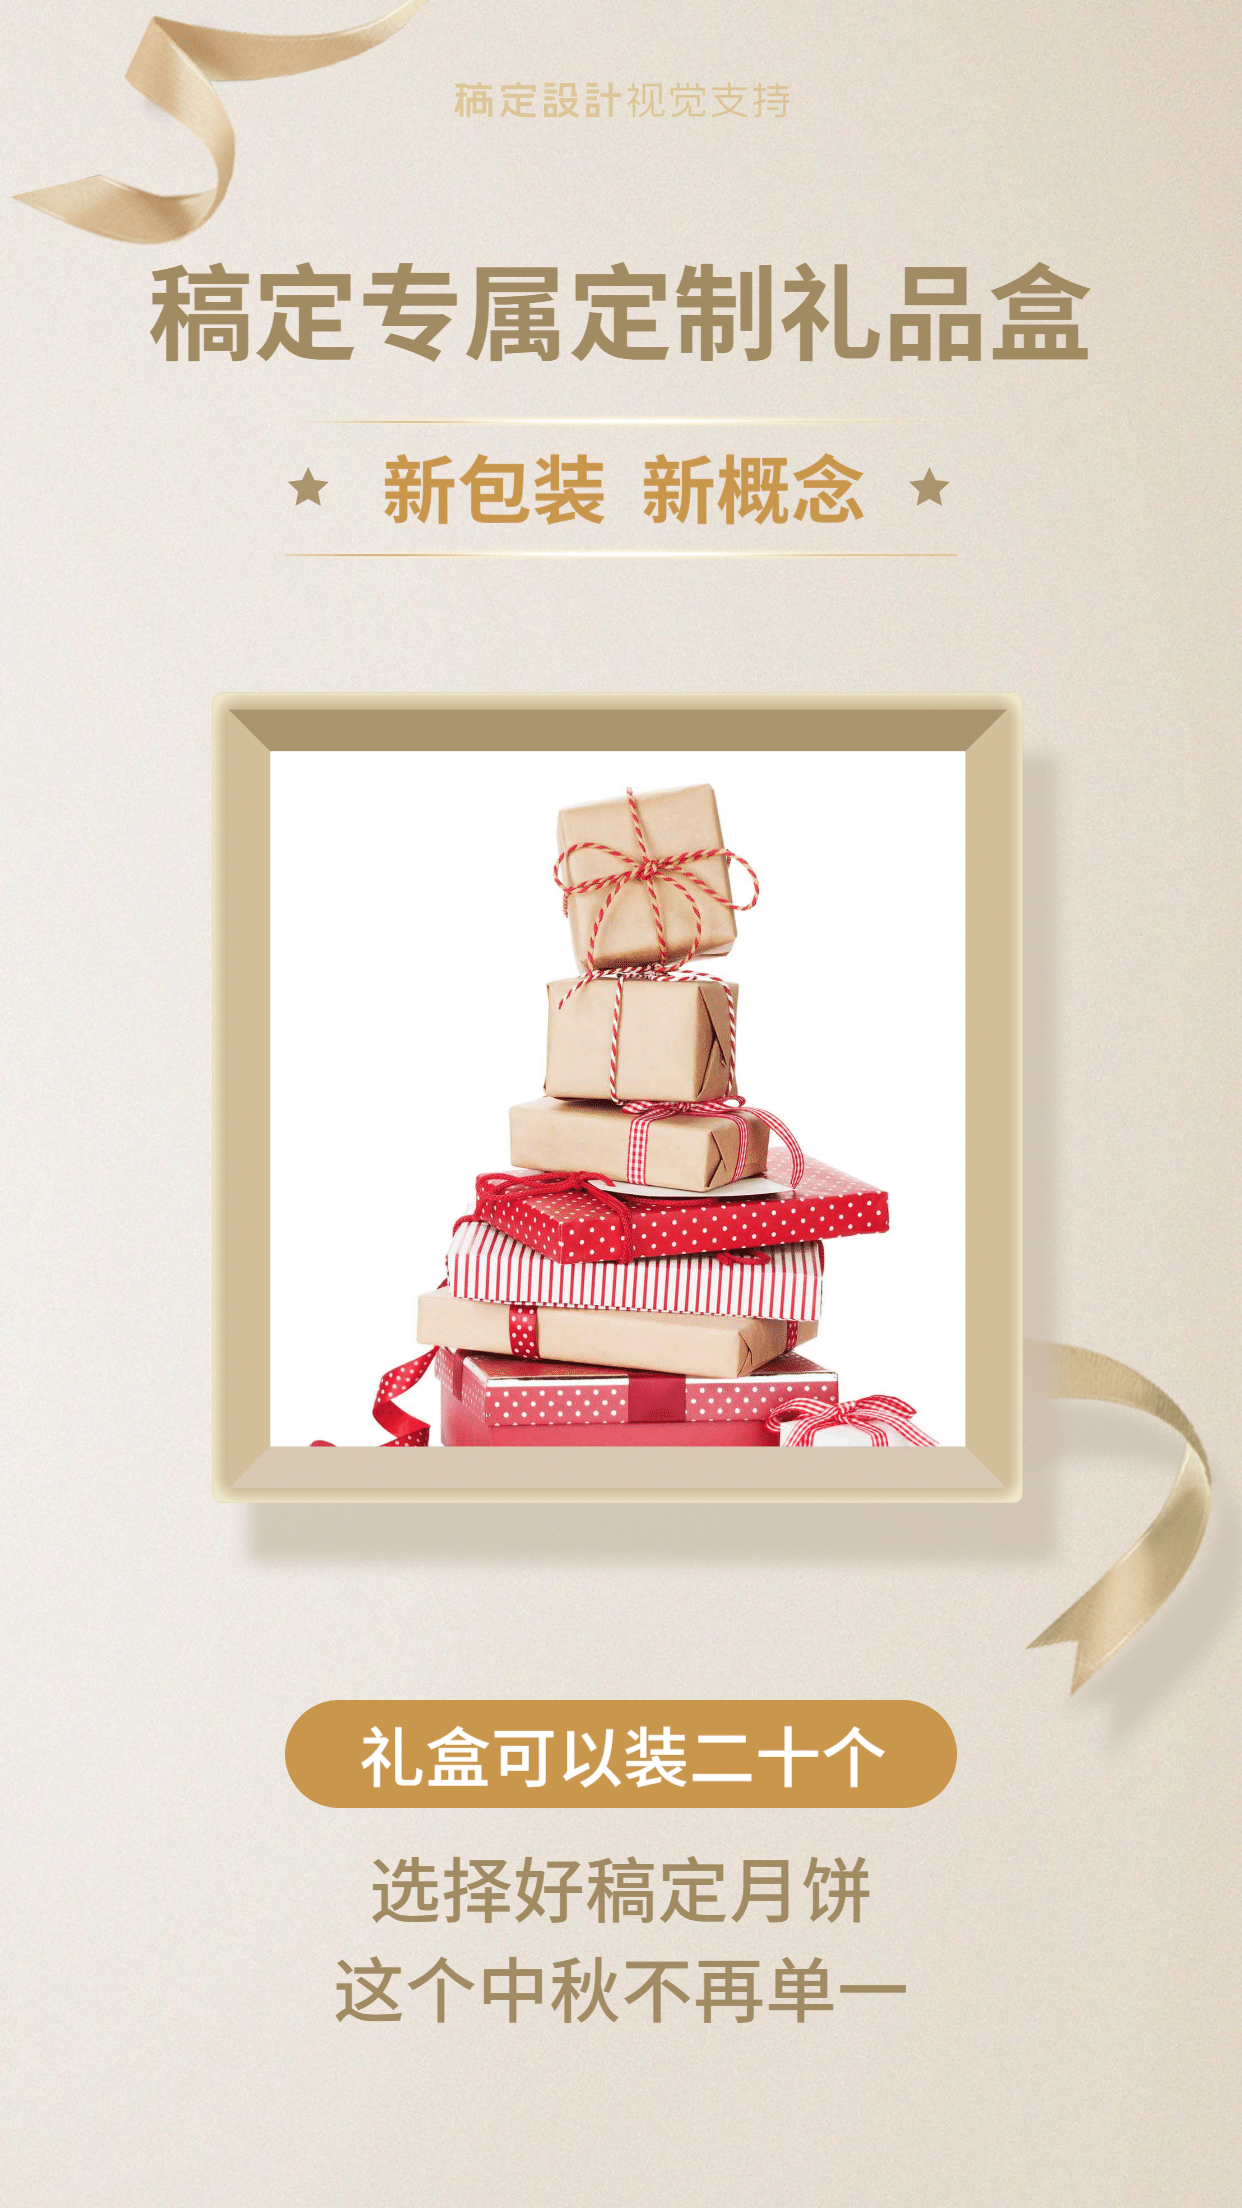 中秋节月饼礼盒产品展示海报预览效果